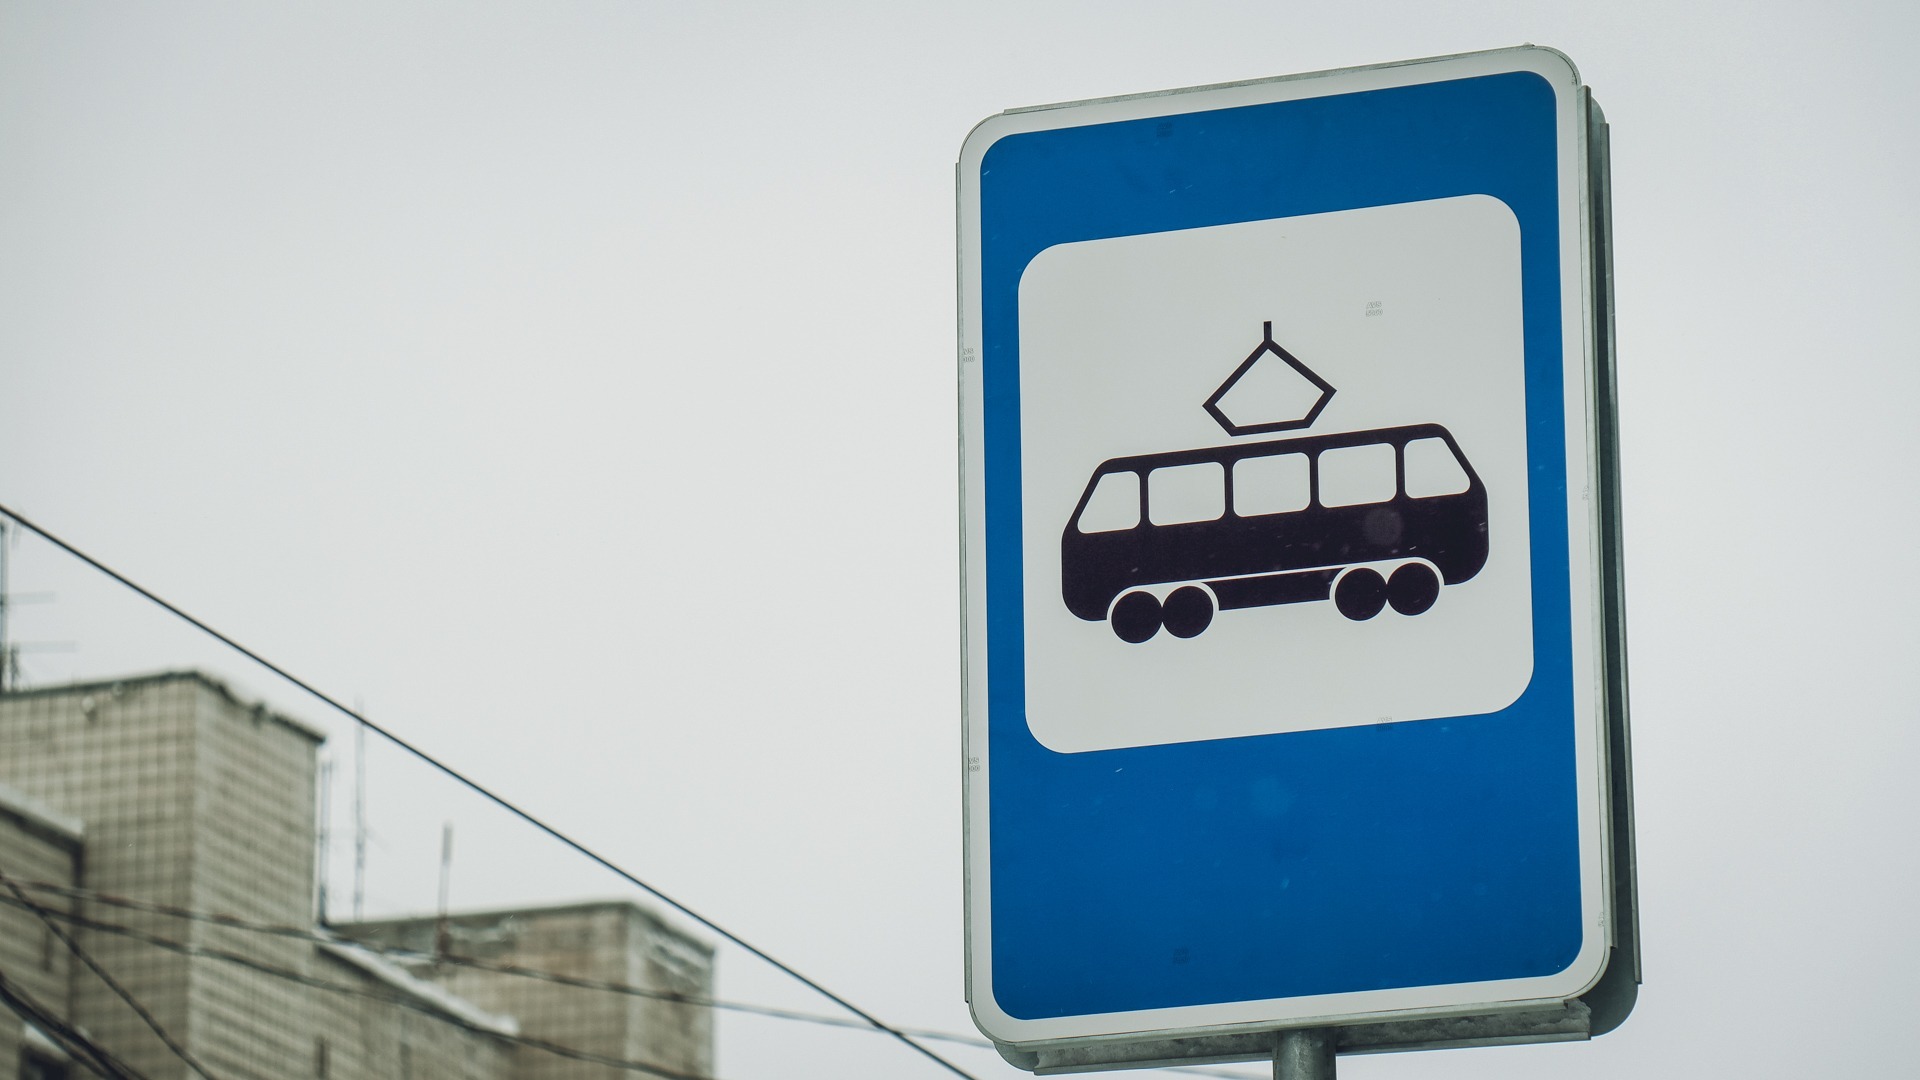 Внутри были люди? : трамвай попал в аварию во Владивостоке — фото